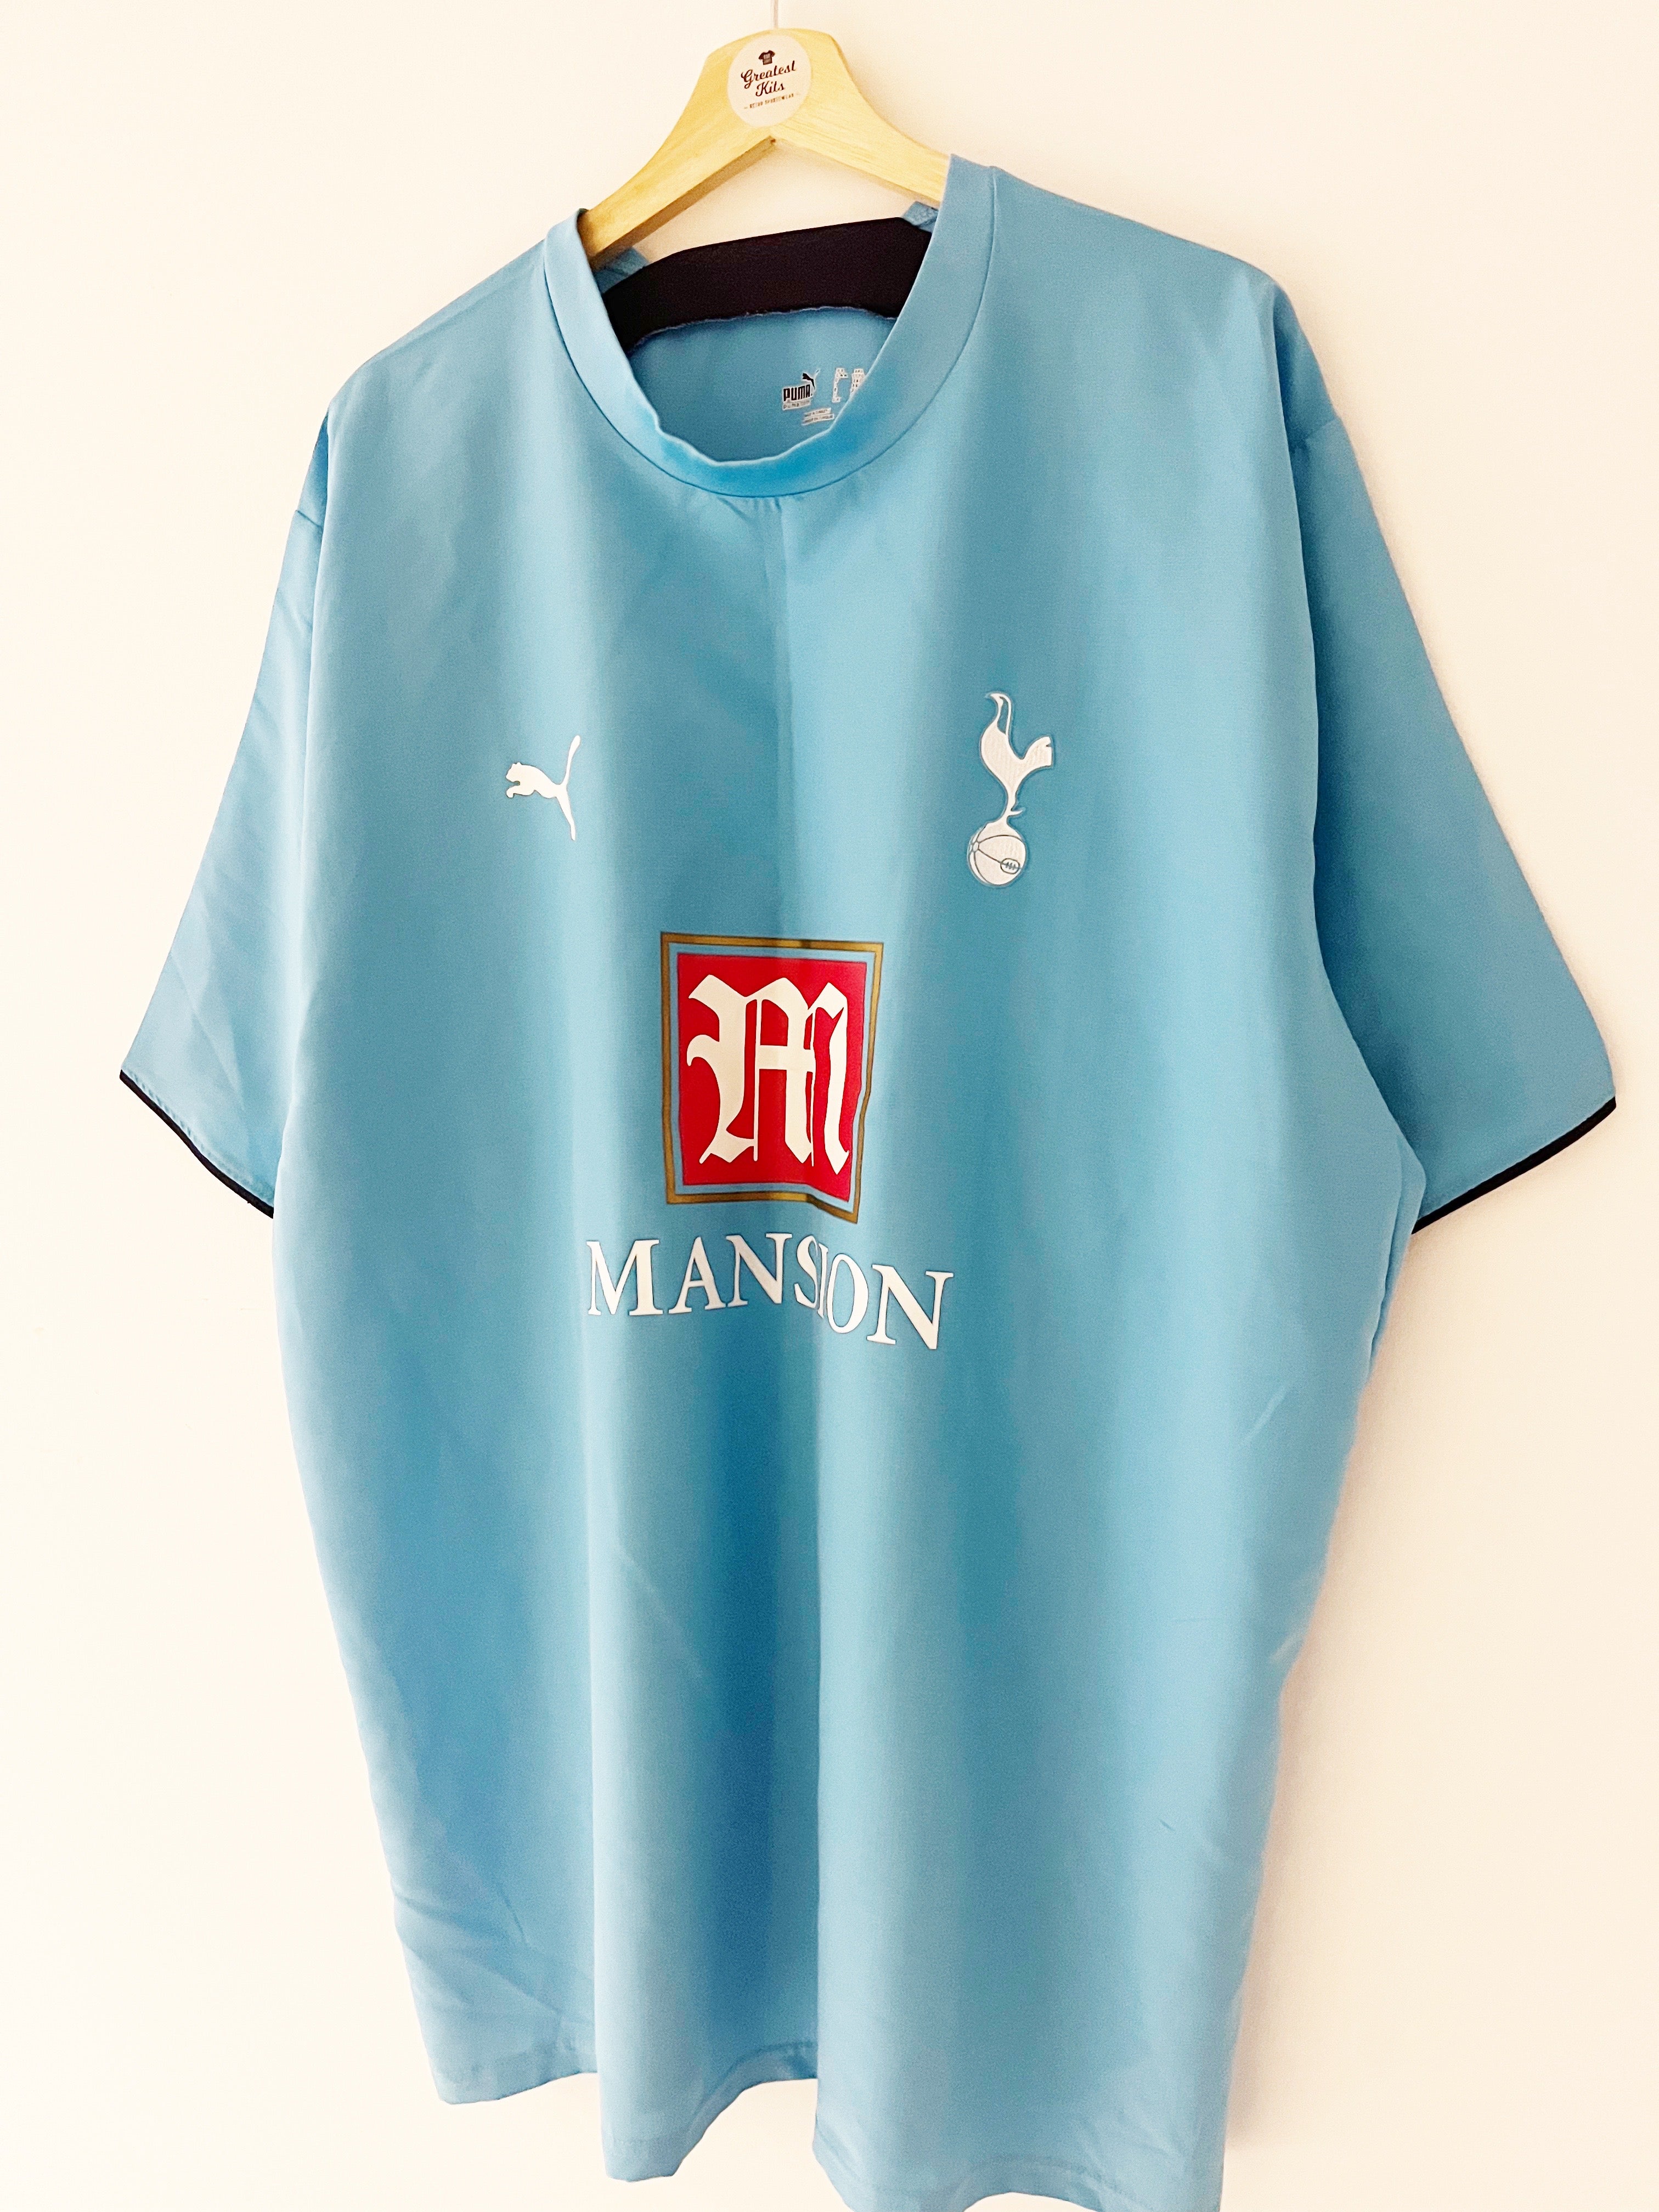 2006/07 Tottenham Hotspur Away Shirt (3XL) 9/10